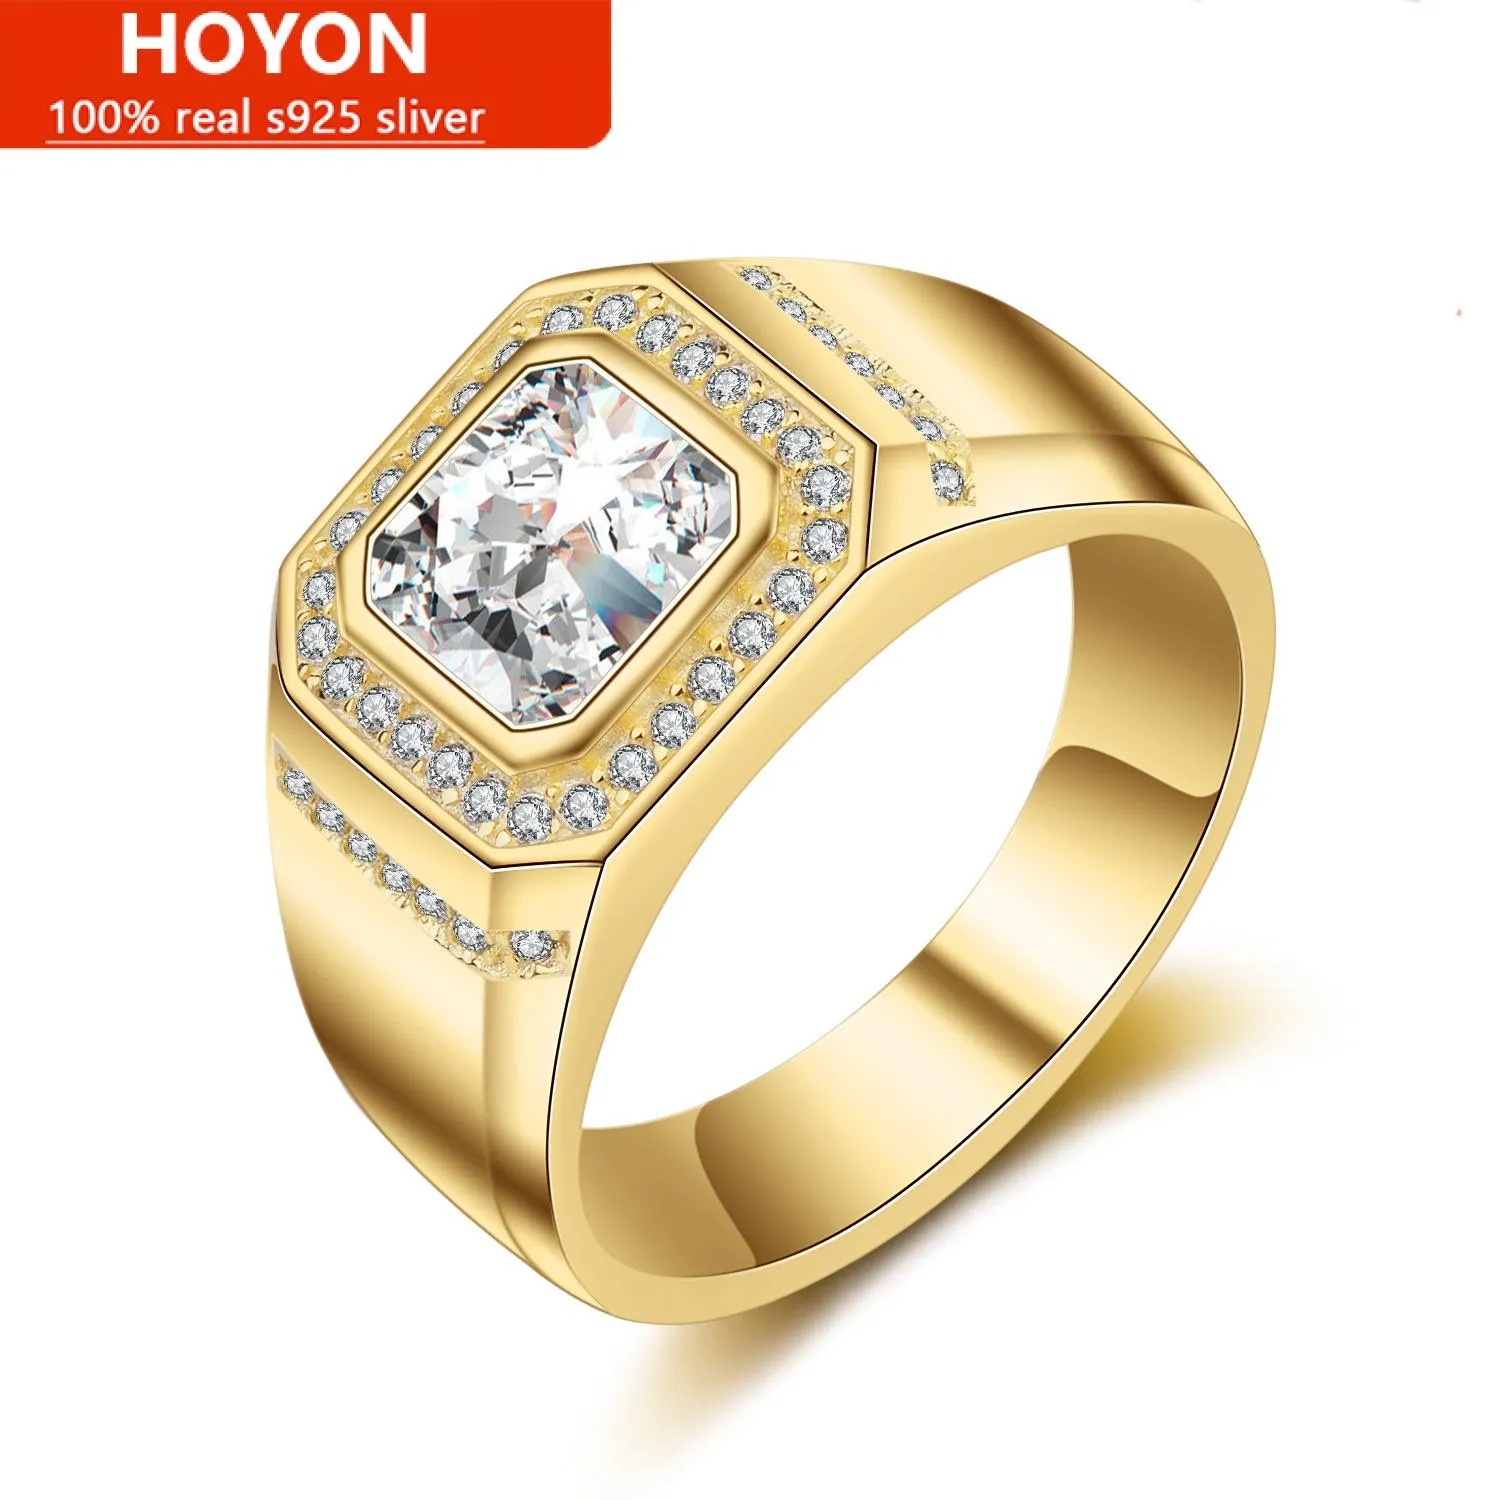 HOYON 14k Or Jaune Couleur Rectangle Coupe Simulation Bague En Diamant Pour Hommes Femmes Or Blanc Revêtement AAA Zircon Fine Bijoux Cadeaux